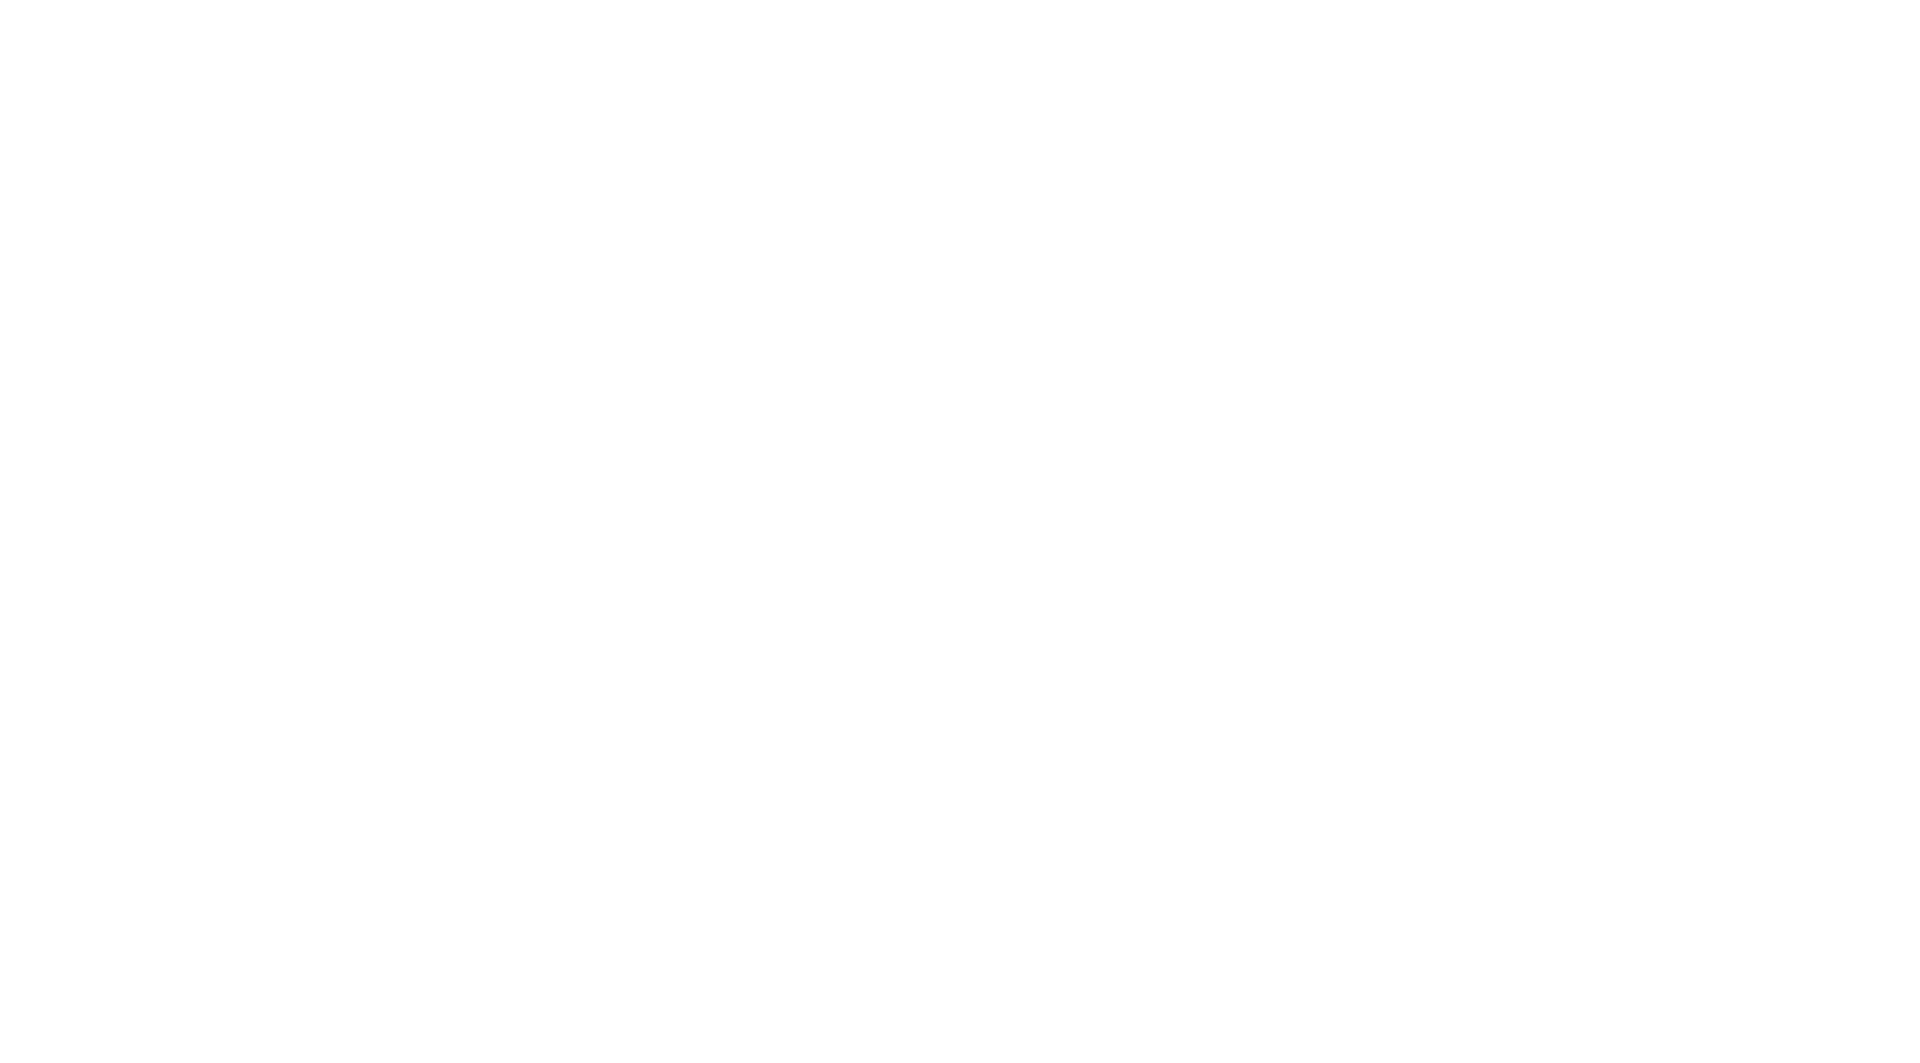 Regency Medical Center - white logo